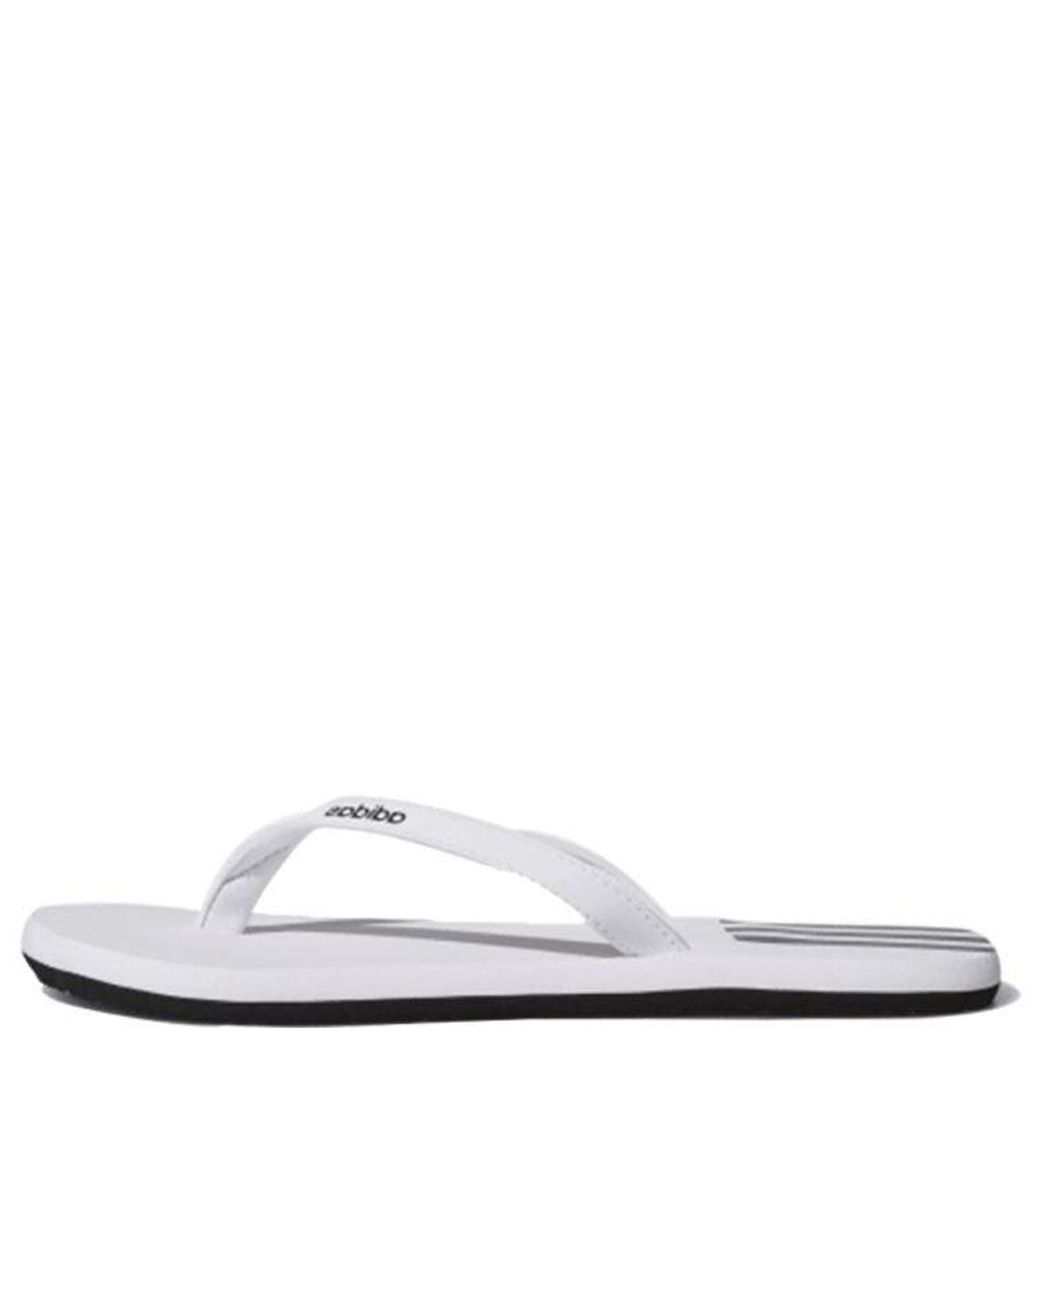 adidas Eezay Flip-flops Slides White/black | Lyst